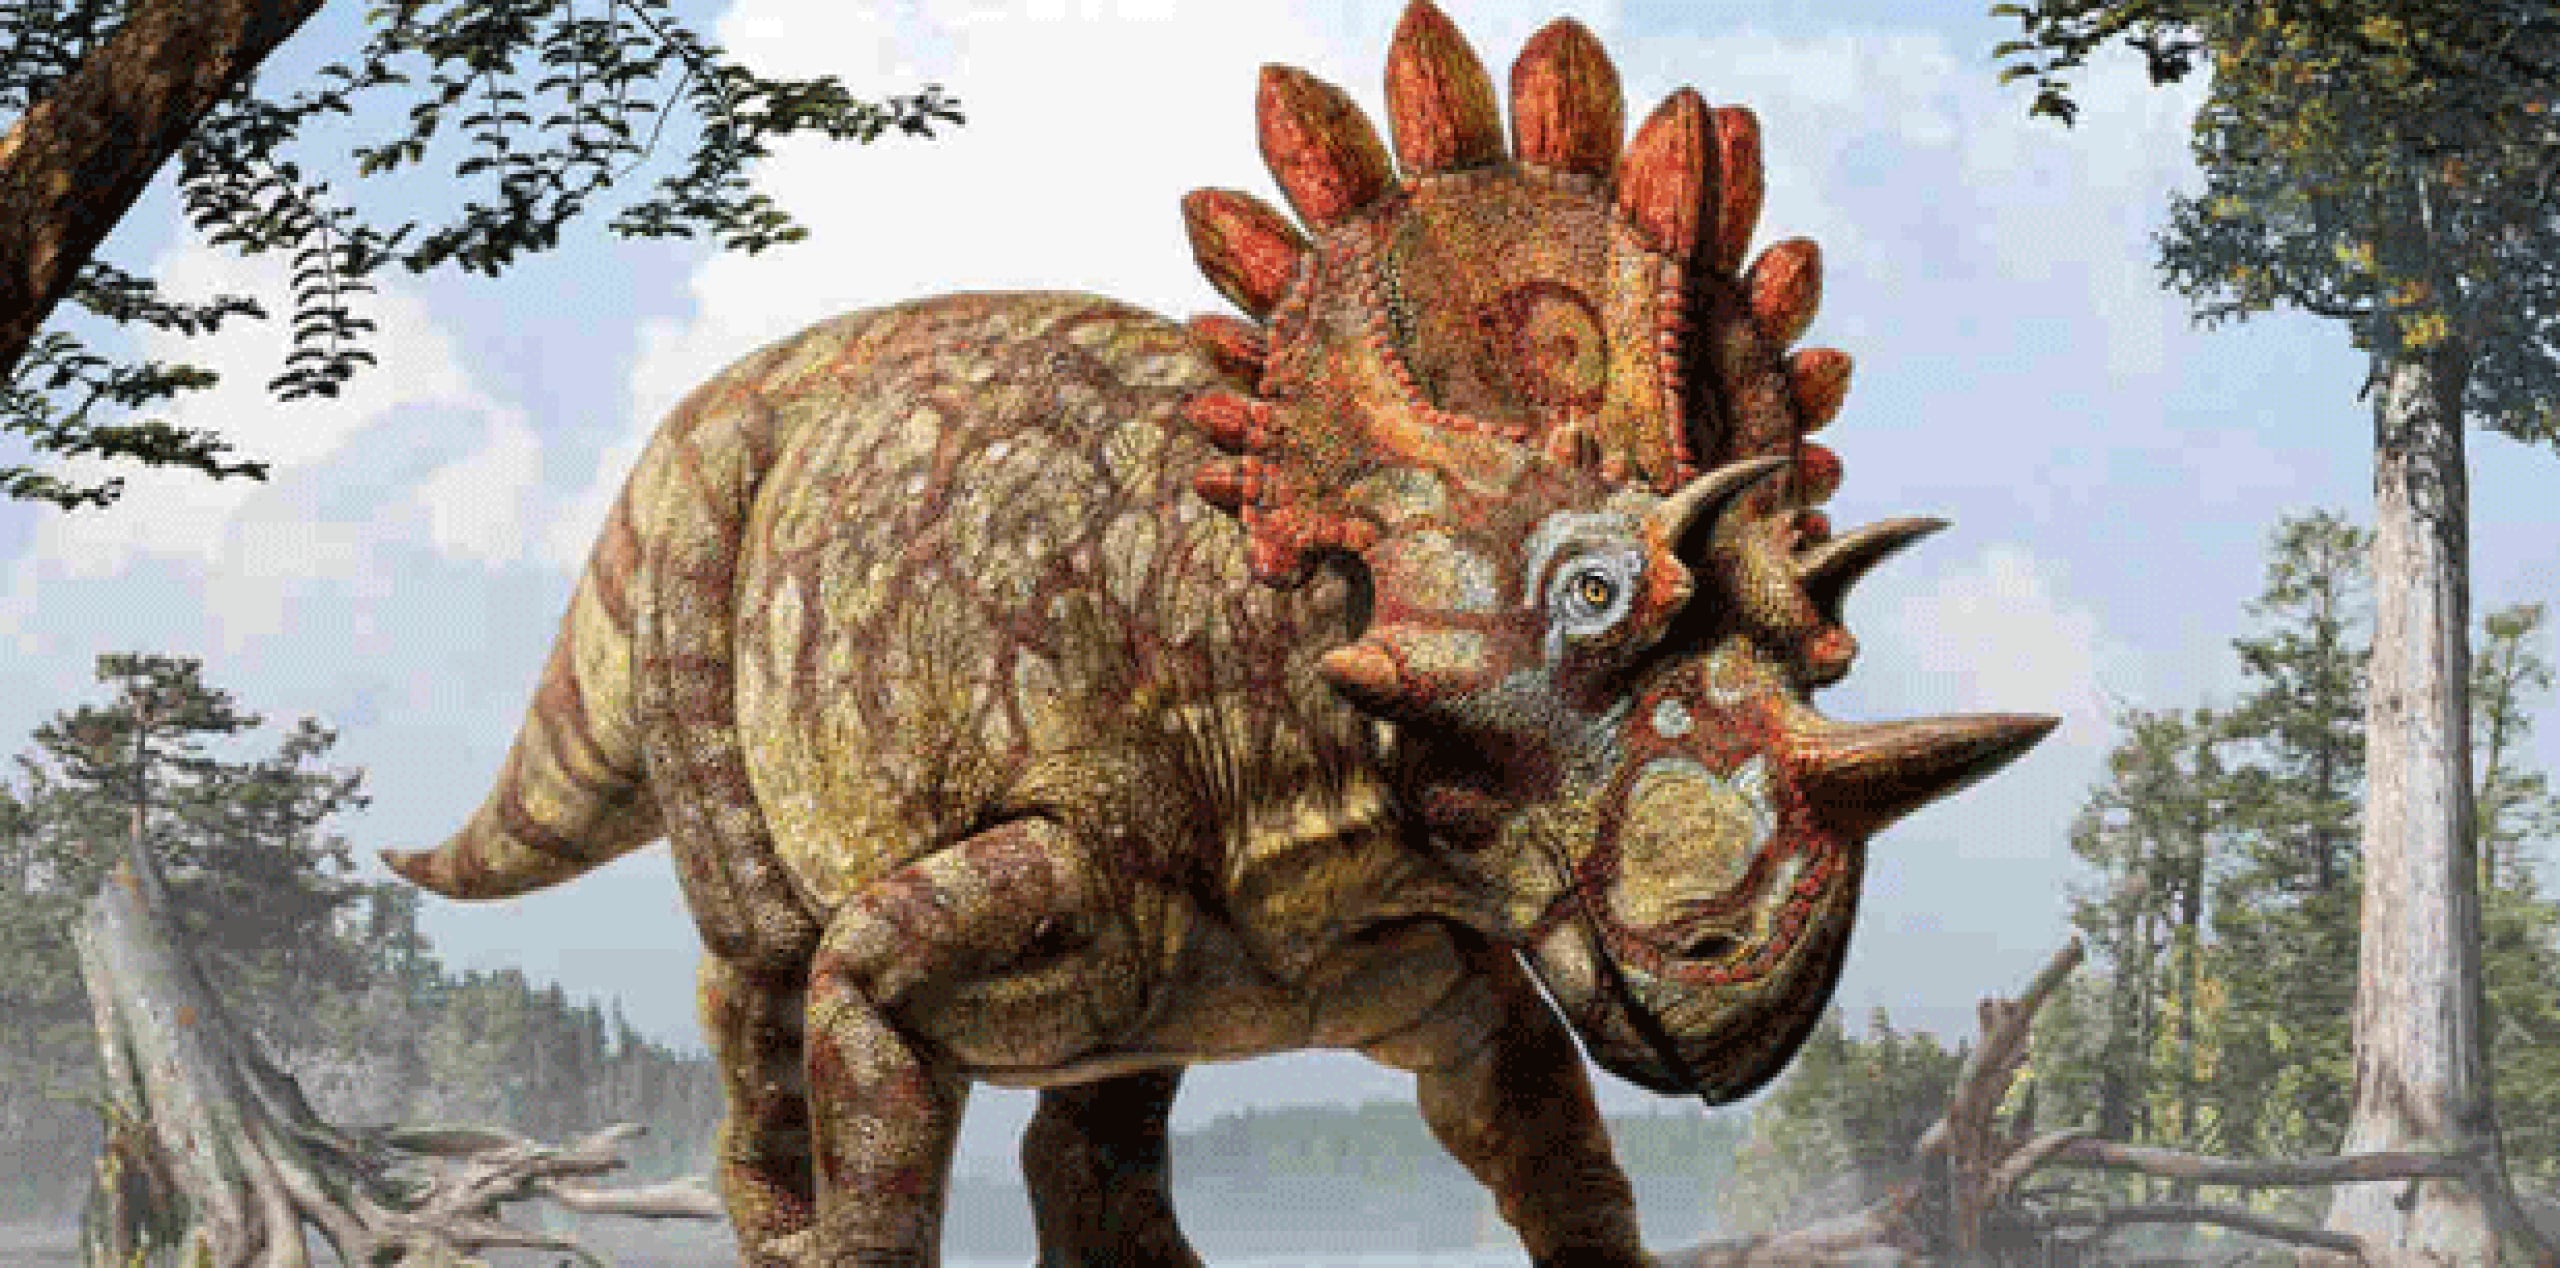 Lo que hacía inconfundible a este dinosaurio era el tamaño y el aspecto de sus cuernos faciales y la gola, como un escudo, en la parte posterior del cráneo. (EFE)